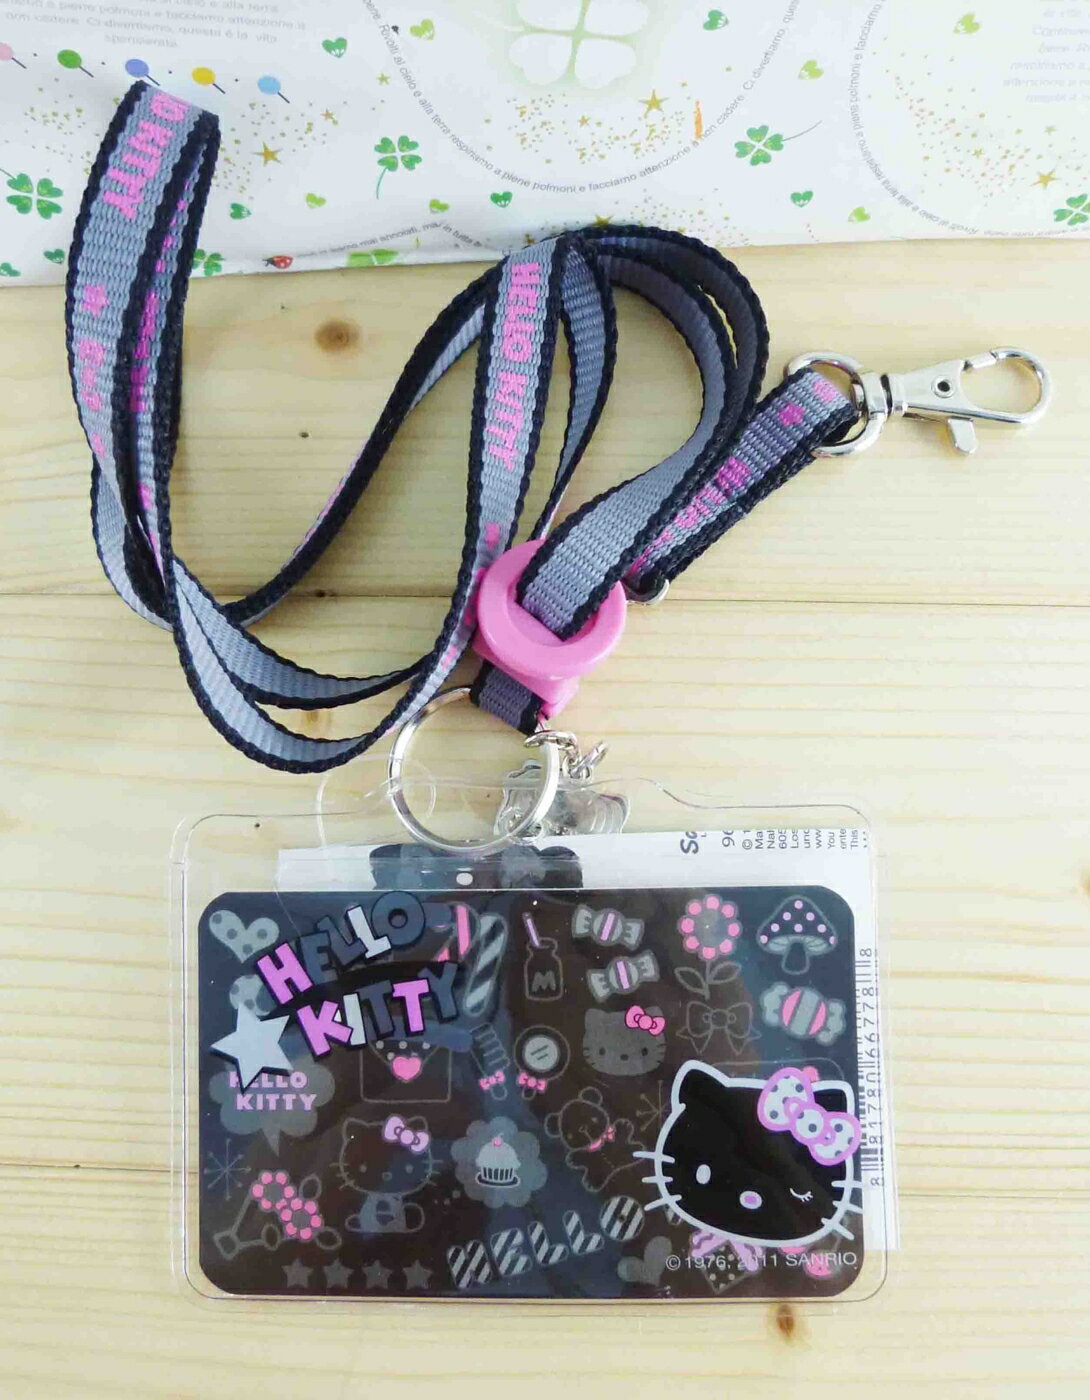 【震撼精品百貨】Hello Kitty 凱蒂貓 KITTY證件套附繩-甜蜜圖案-黑色 震撼日式精品百貨